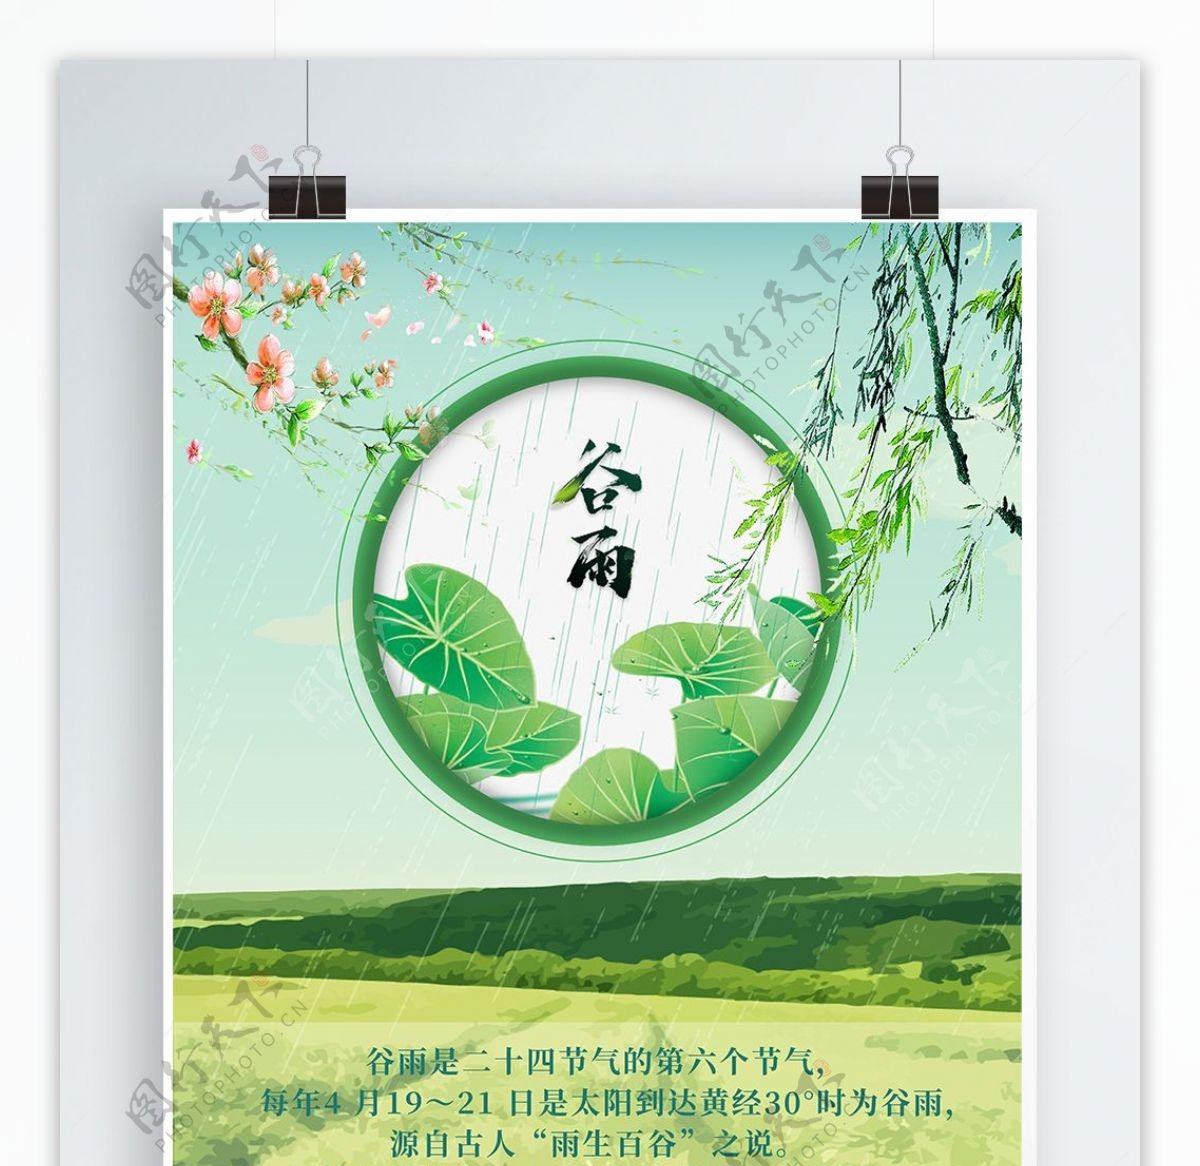 2018传统节气之谷雨海报设计